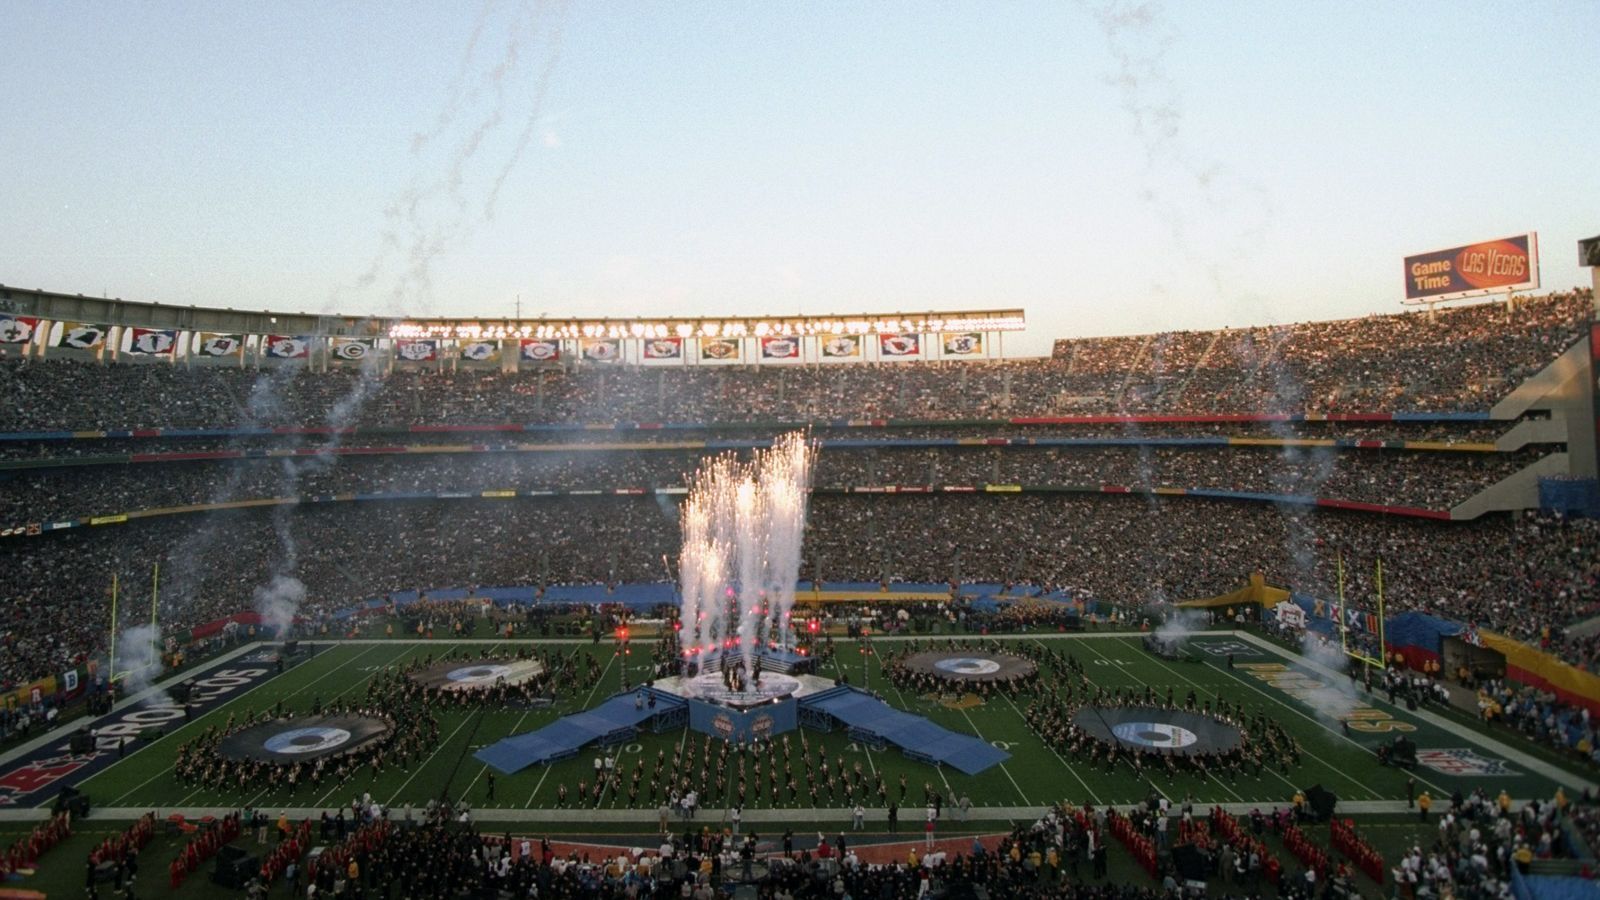 
                <strong>San Diego (drei Super Bowls ausgetragen)</strong><br>
                &#x2022; Stadion: Qualcomm Stadium (1988, 1998, 2003)<br>
              